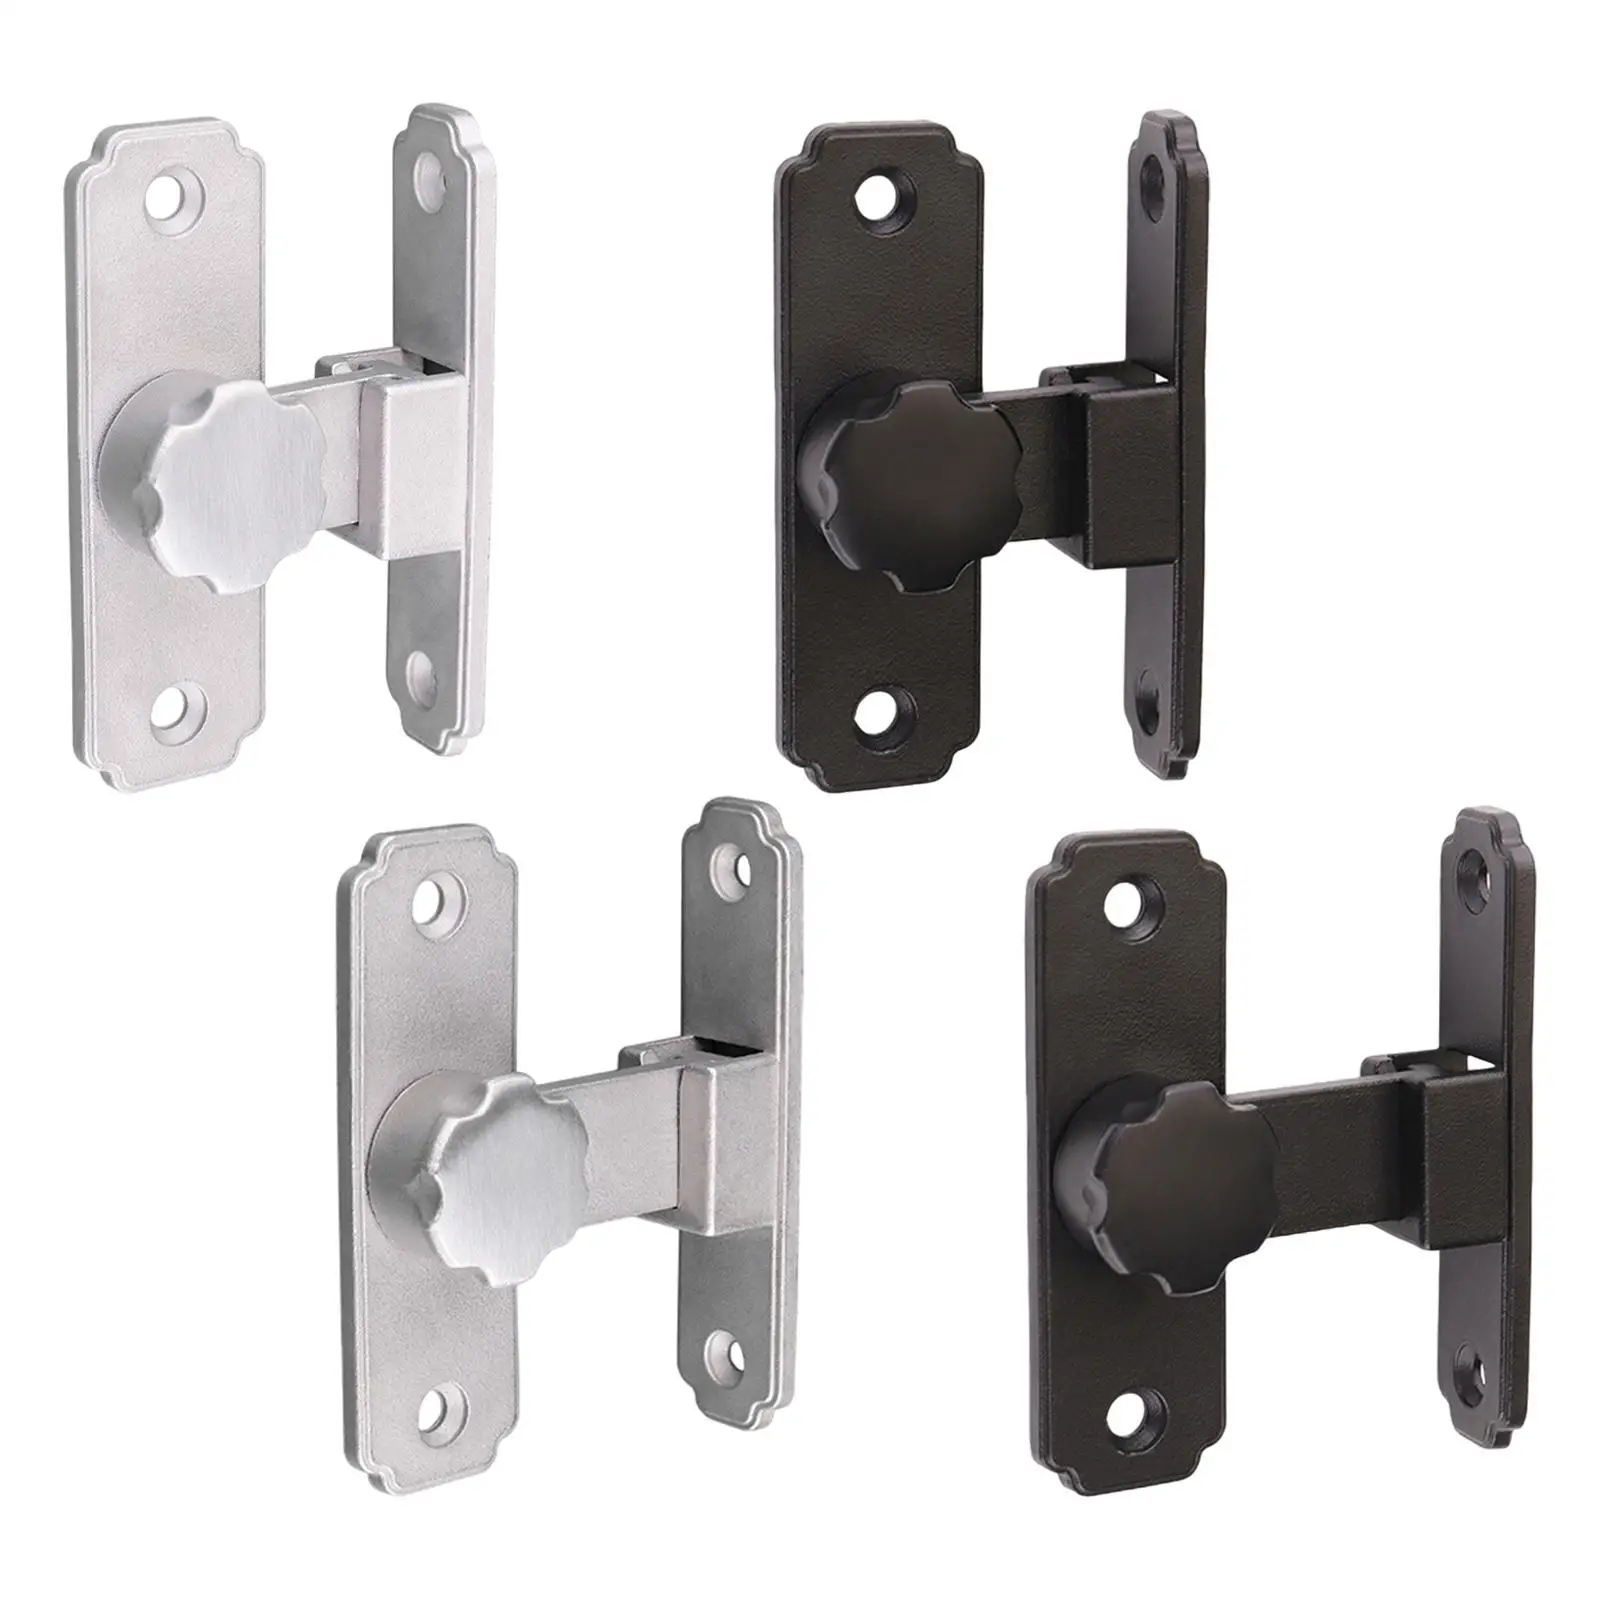 Sliding Door Lock Lever Lock Heavy Duty with Screws Durable Hardware Front Door Locks for Bathroom Entrance Garage Home Window